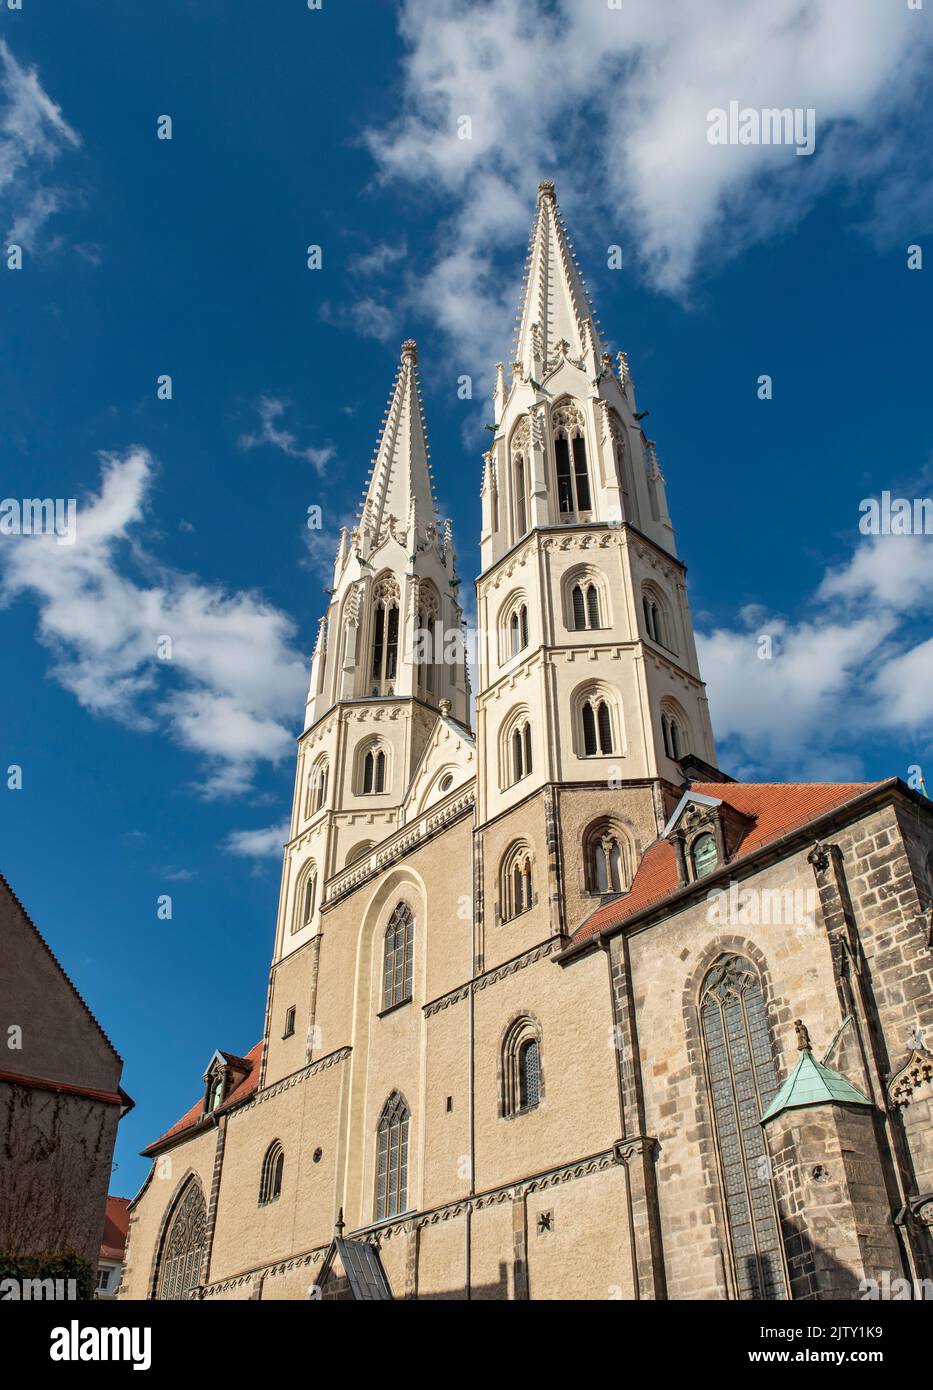 Église Saint-Pierre-et-Paul (Peterskirche), Görlitz (Goerlitz), Allemagne Banque D'Images